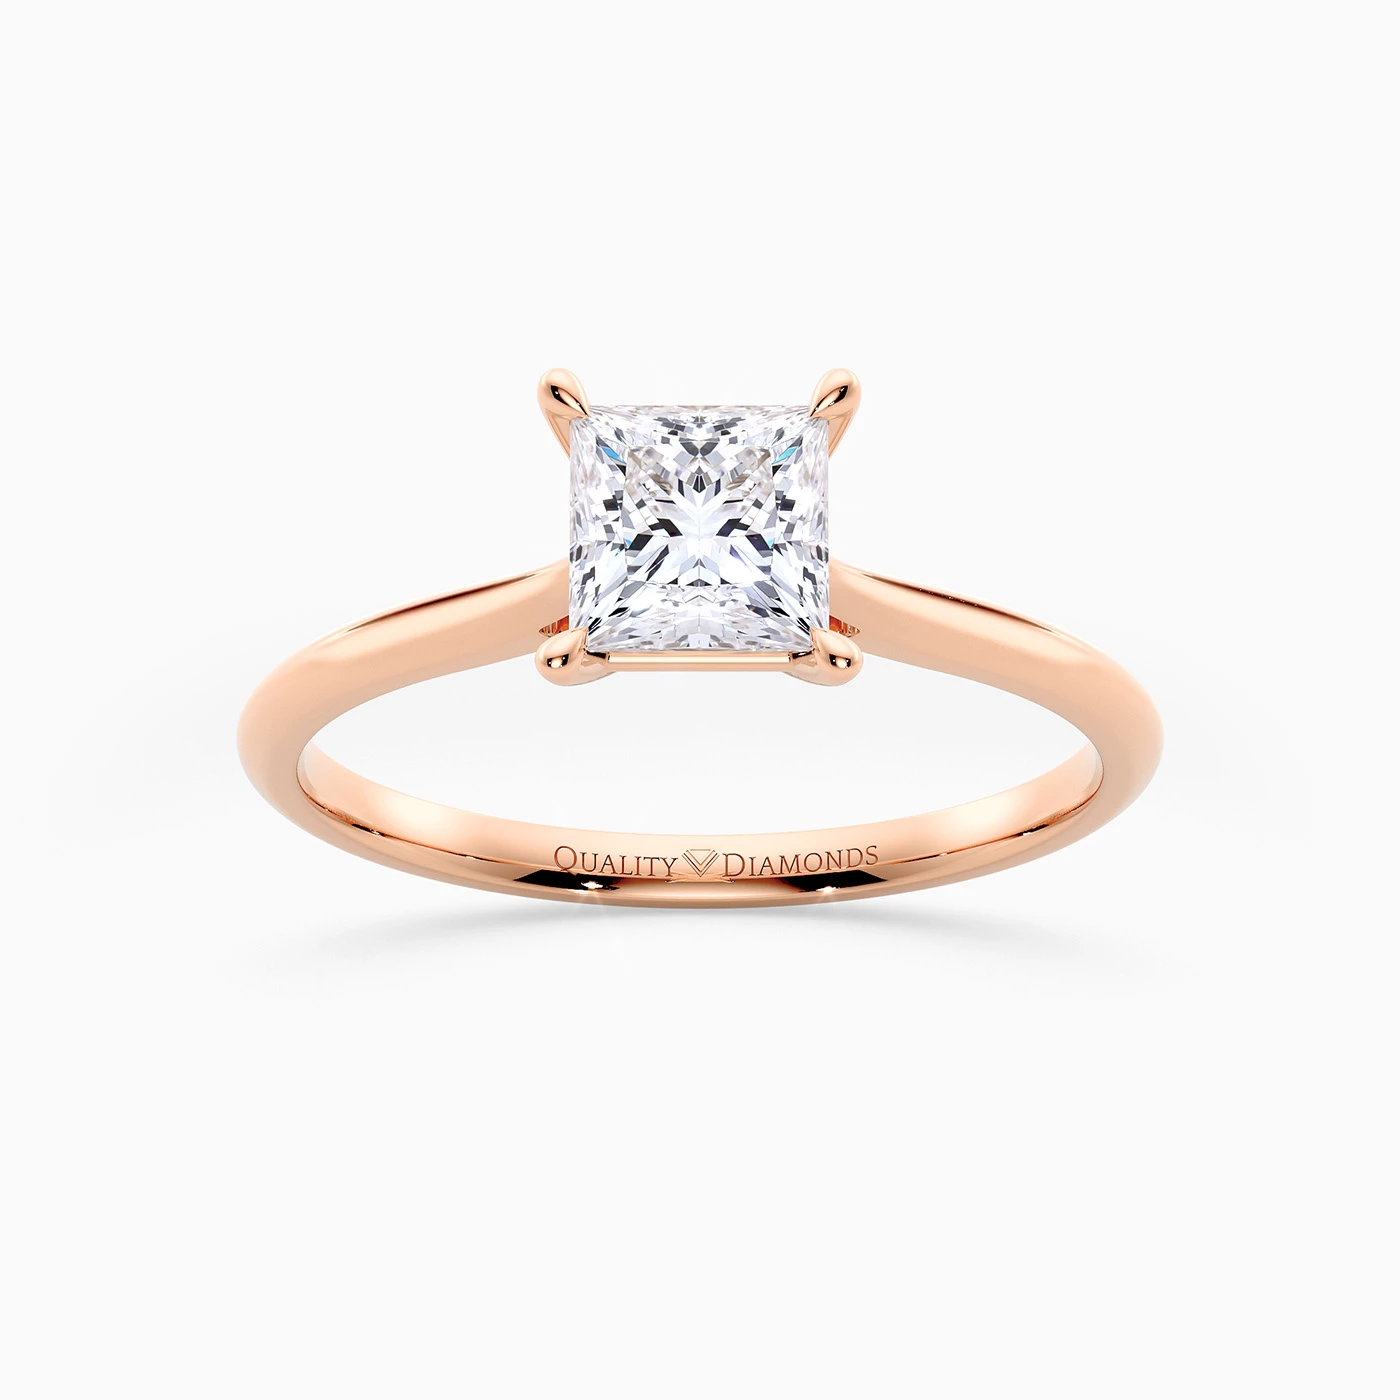 Princess Carys Diamond Ring in 18K Rose Gold